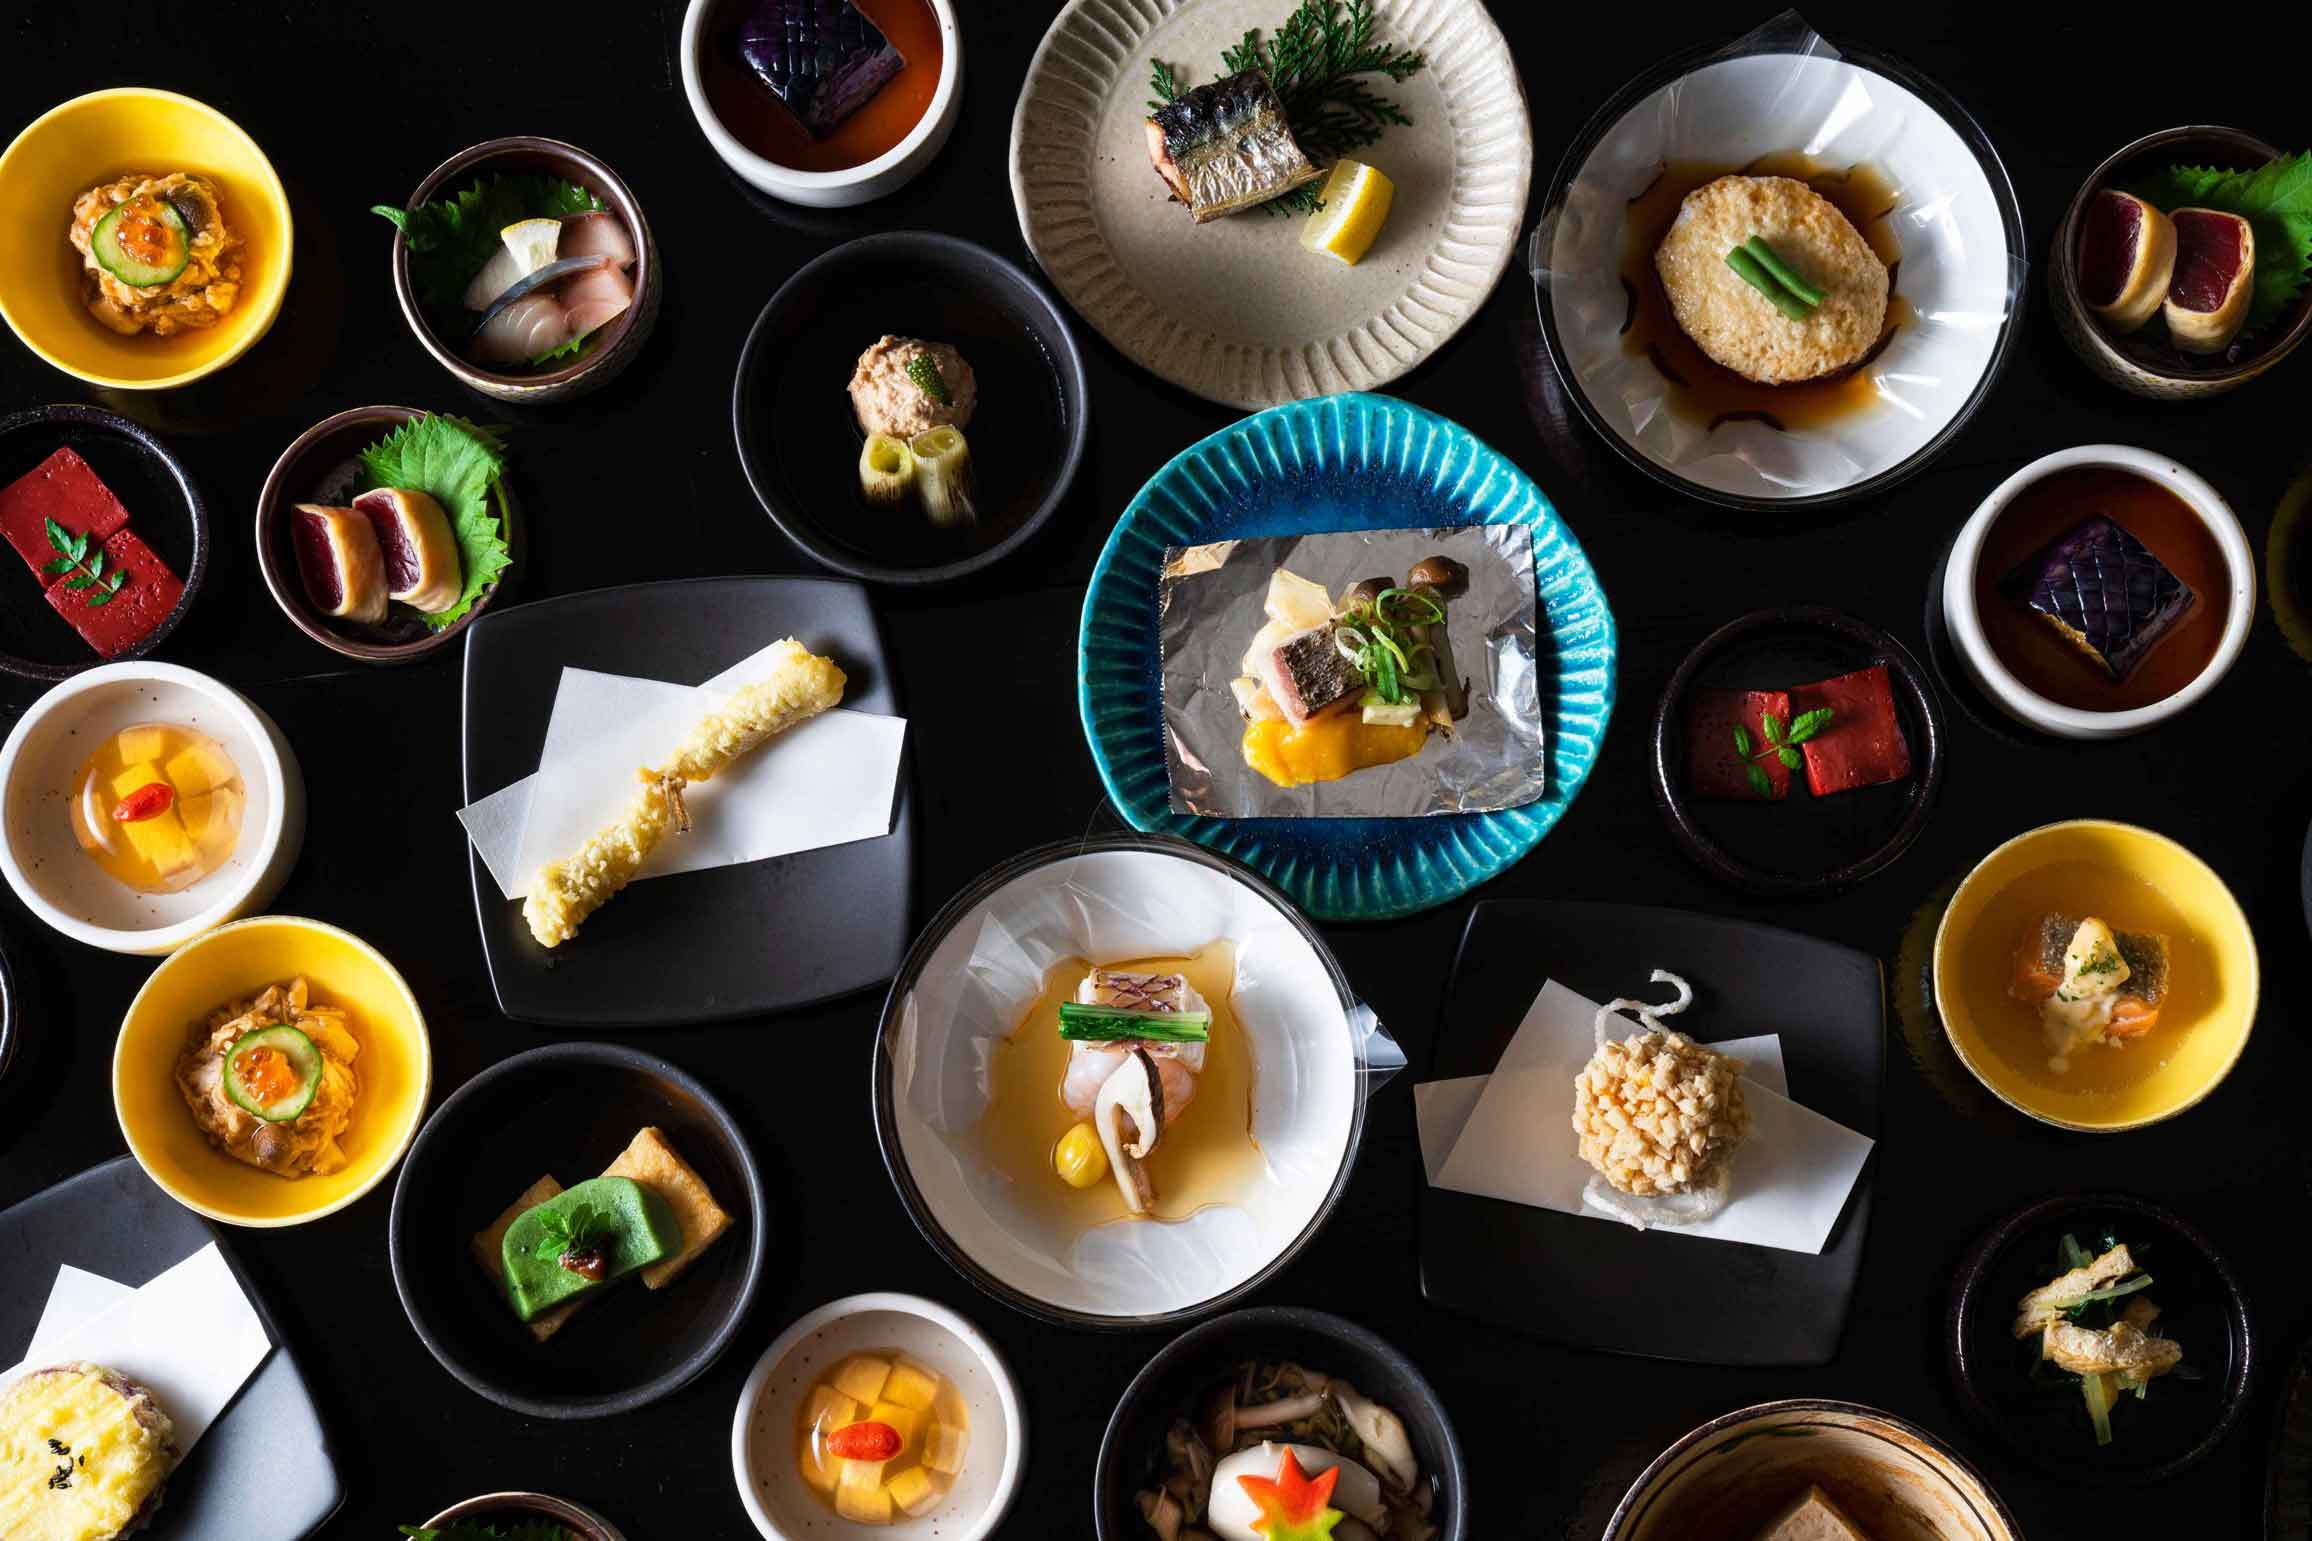 京都山科 ホテル山楽が素材にこだわった人気の朝食ブッフェを
9月限定で「京会席ブランチ」として提供開始！